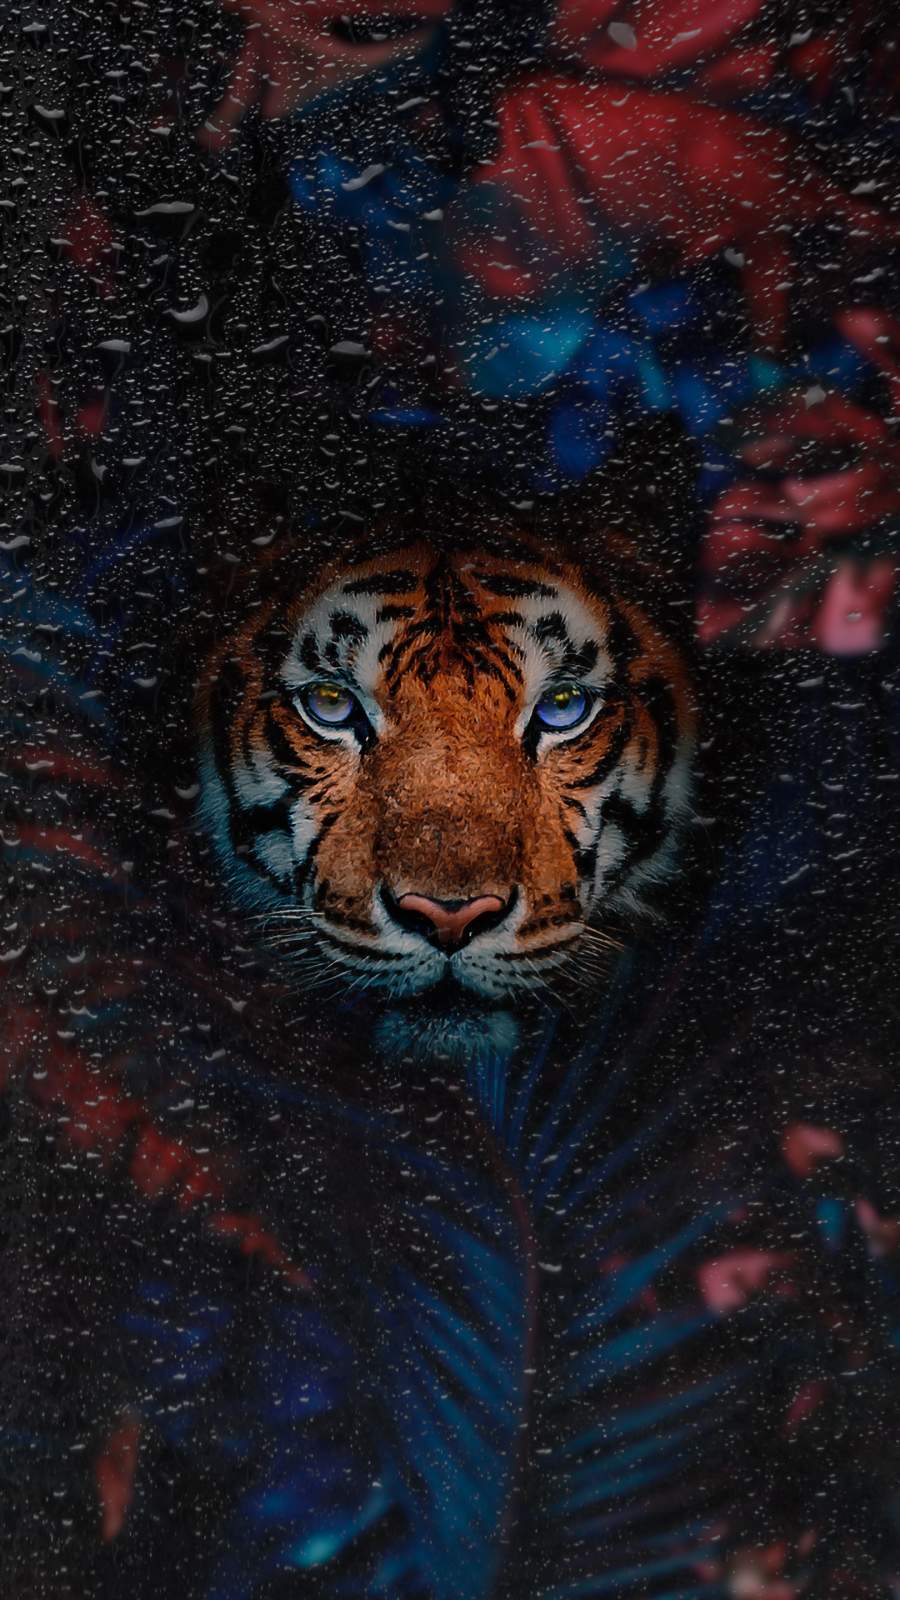 HD Tiger Wallpaper - iXpap